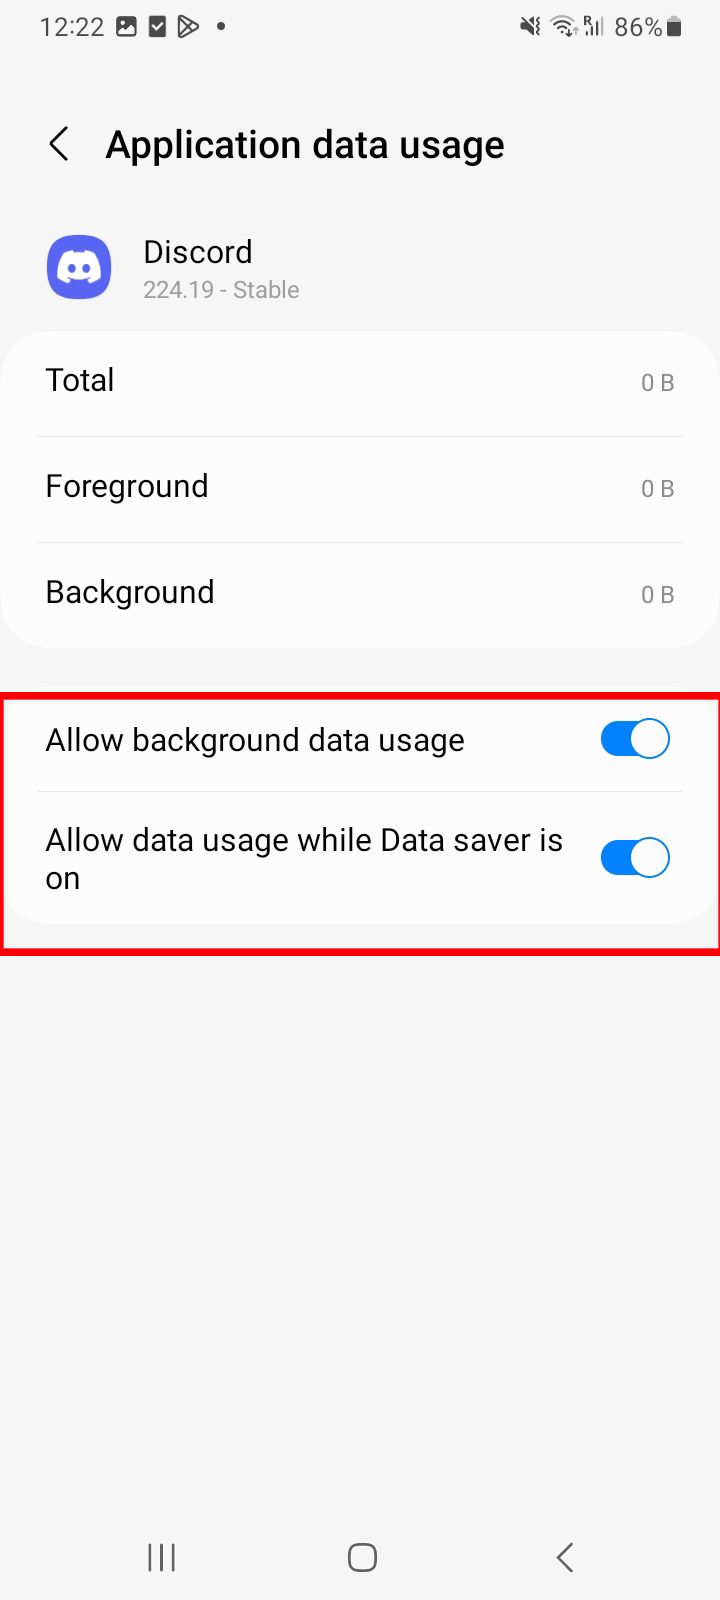 Tela de uso de dados do aplicativo Android para Discord mostrando opções para permitir o uso de dados em segundo plano e permitir o uso de dados enquanto a economia de dados está ativada